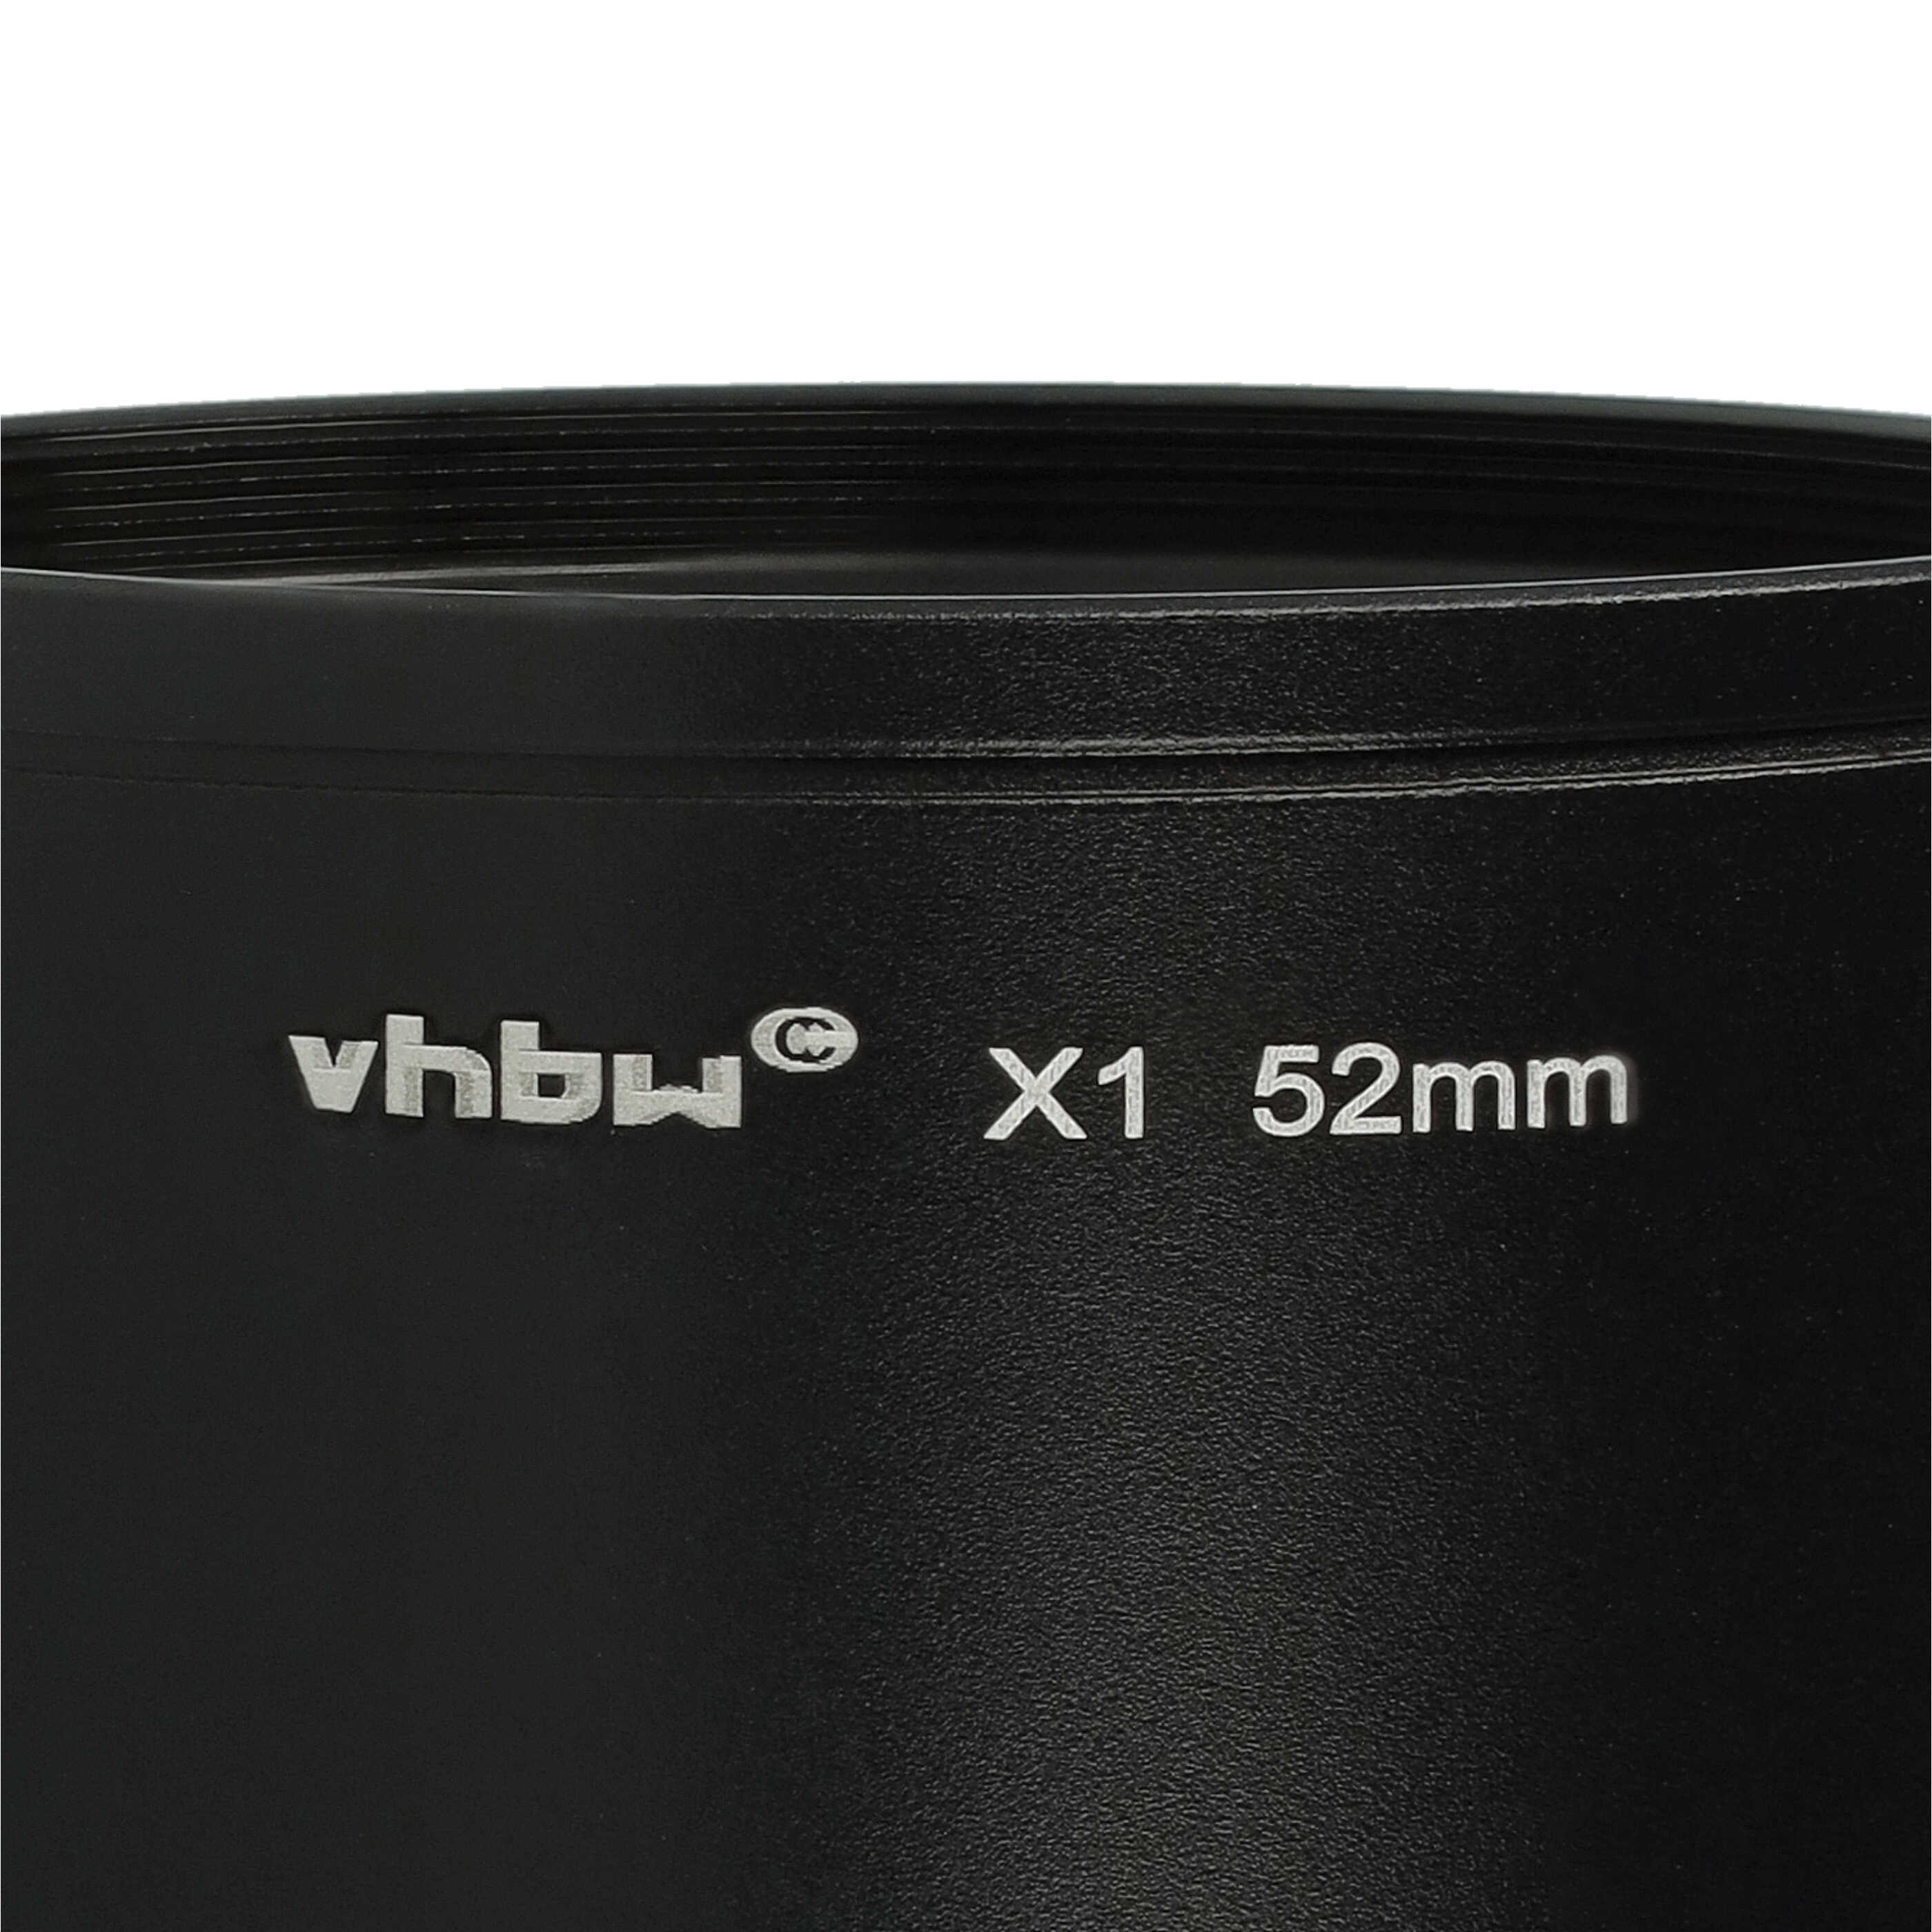 Adaptateur pour filtre 52 mm pour objectif photo Leica X1, X2